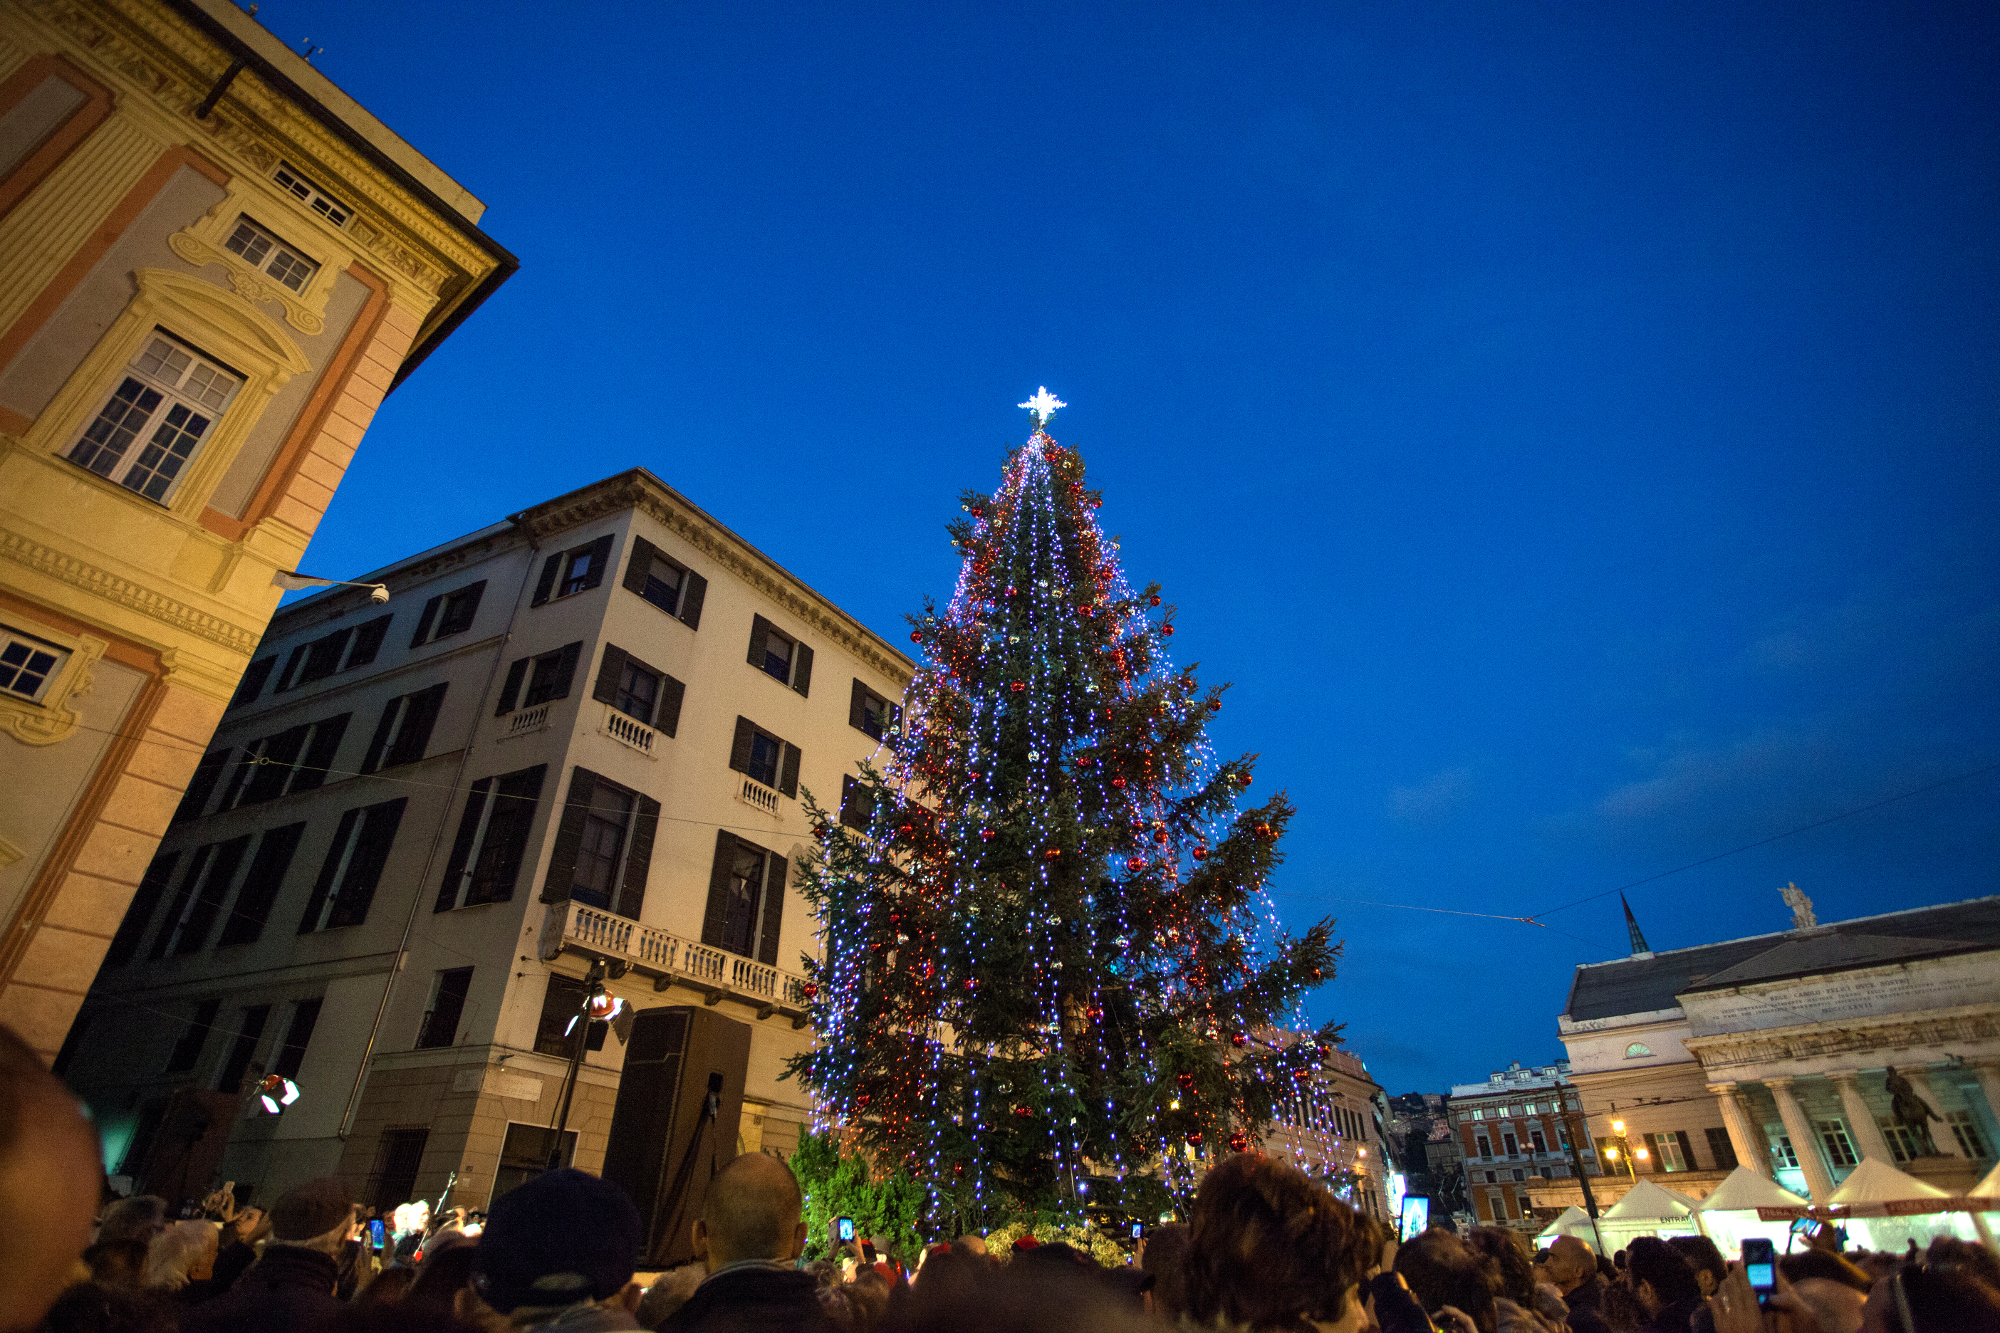 Natale a Genova con 10 alberi e il tunnel di luce più lungo d'Europa